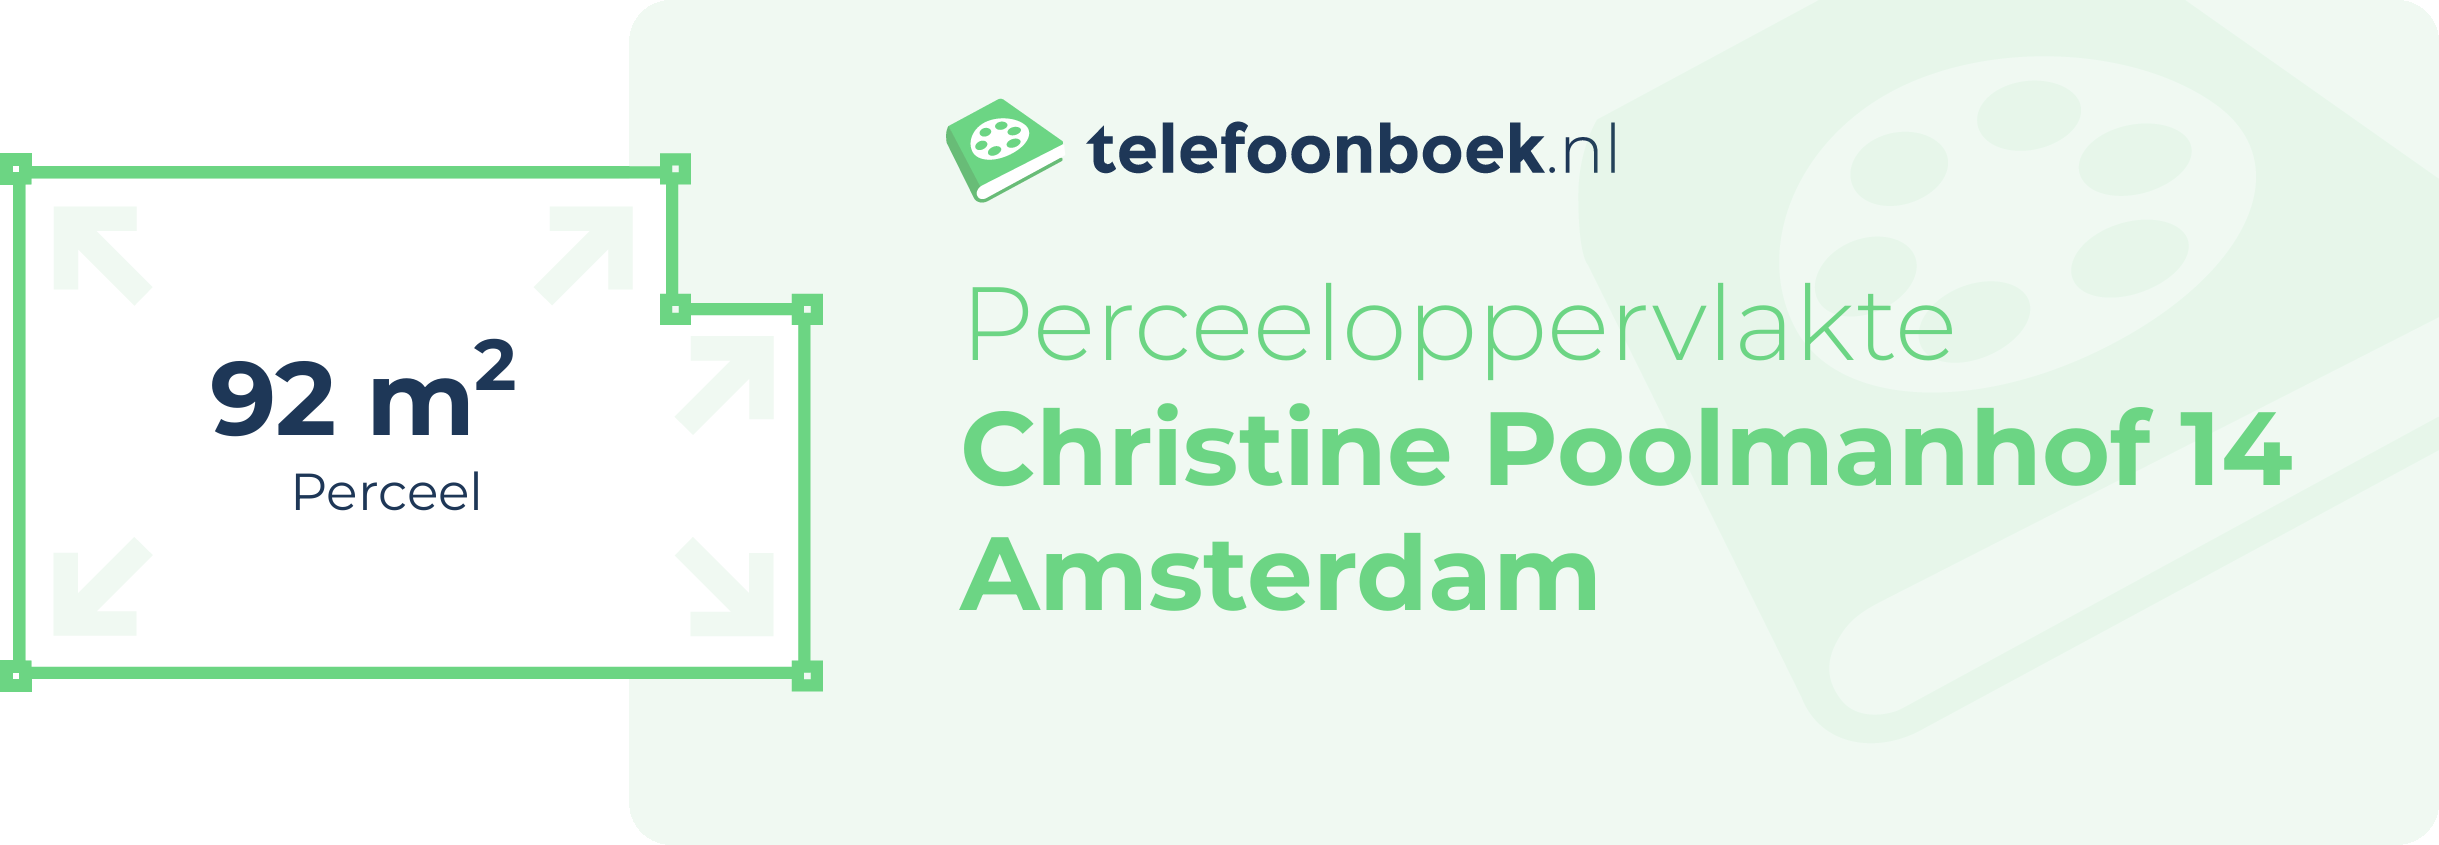 Perceeloppervlakte Christine Poolmanhof 14 Amsterdam